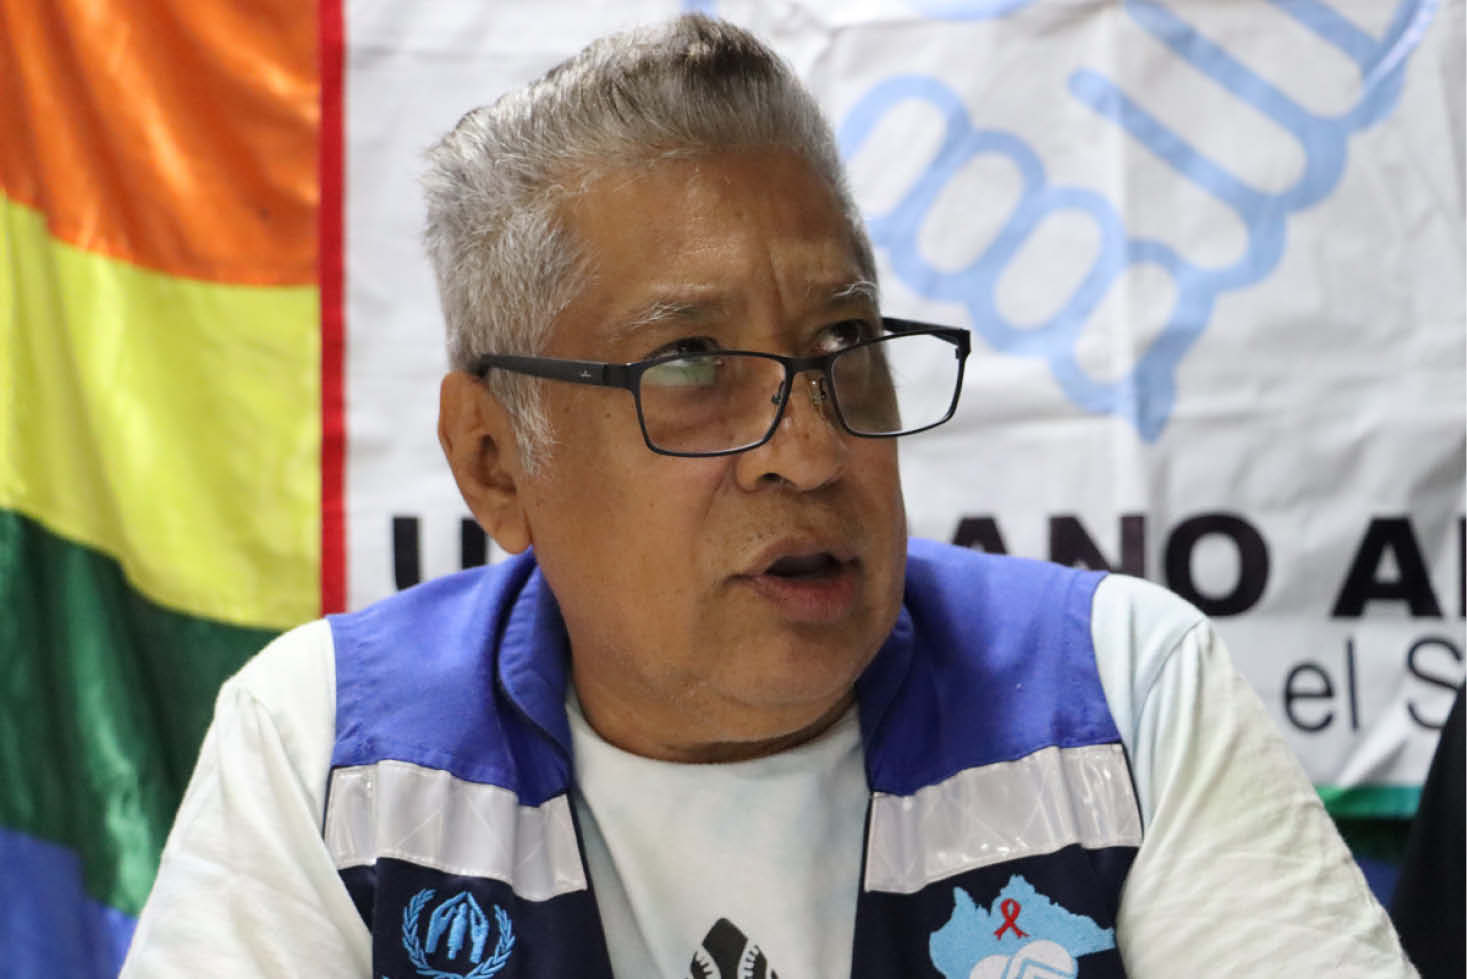 El presidente del colectivo Una mano amiga en la lucha contra el SIDA en Tapachula, Rosemberg López Samayoa, participa durante una rueda de prensa en el municipio de Tapachula en Chiapas (México). EFE/Juan Manuel Blanco